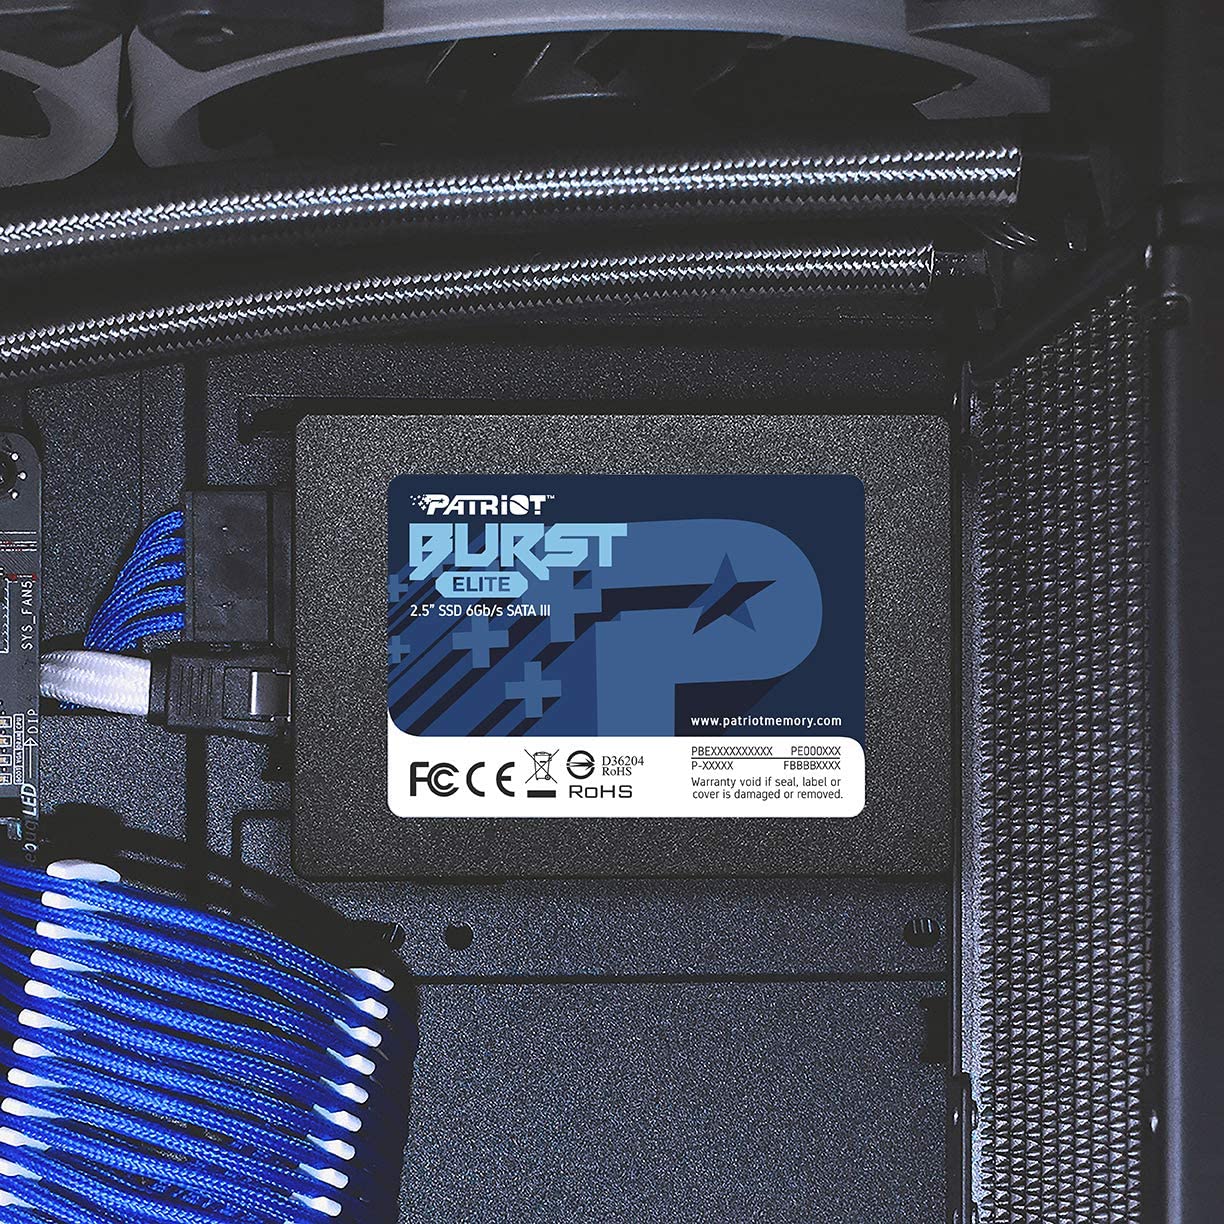 Patriot Burst Elite SATA 3 120GB SSD 2.5